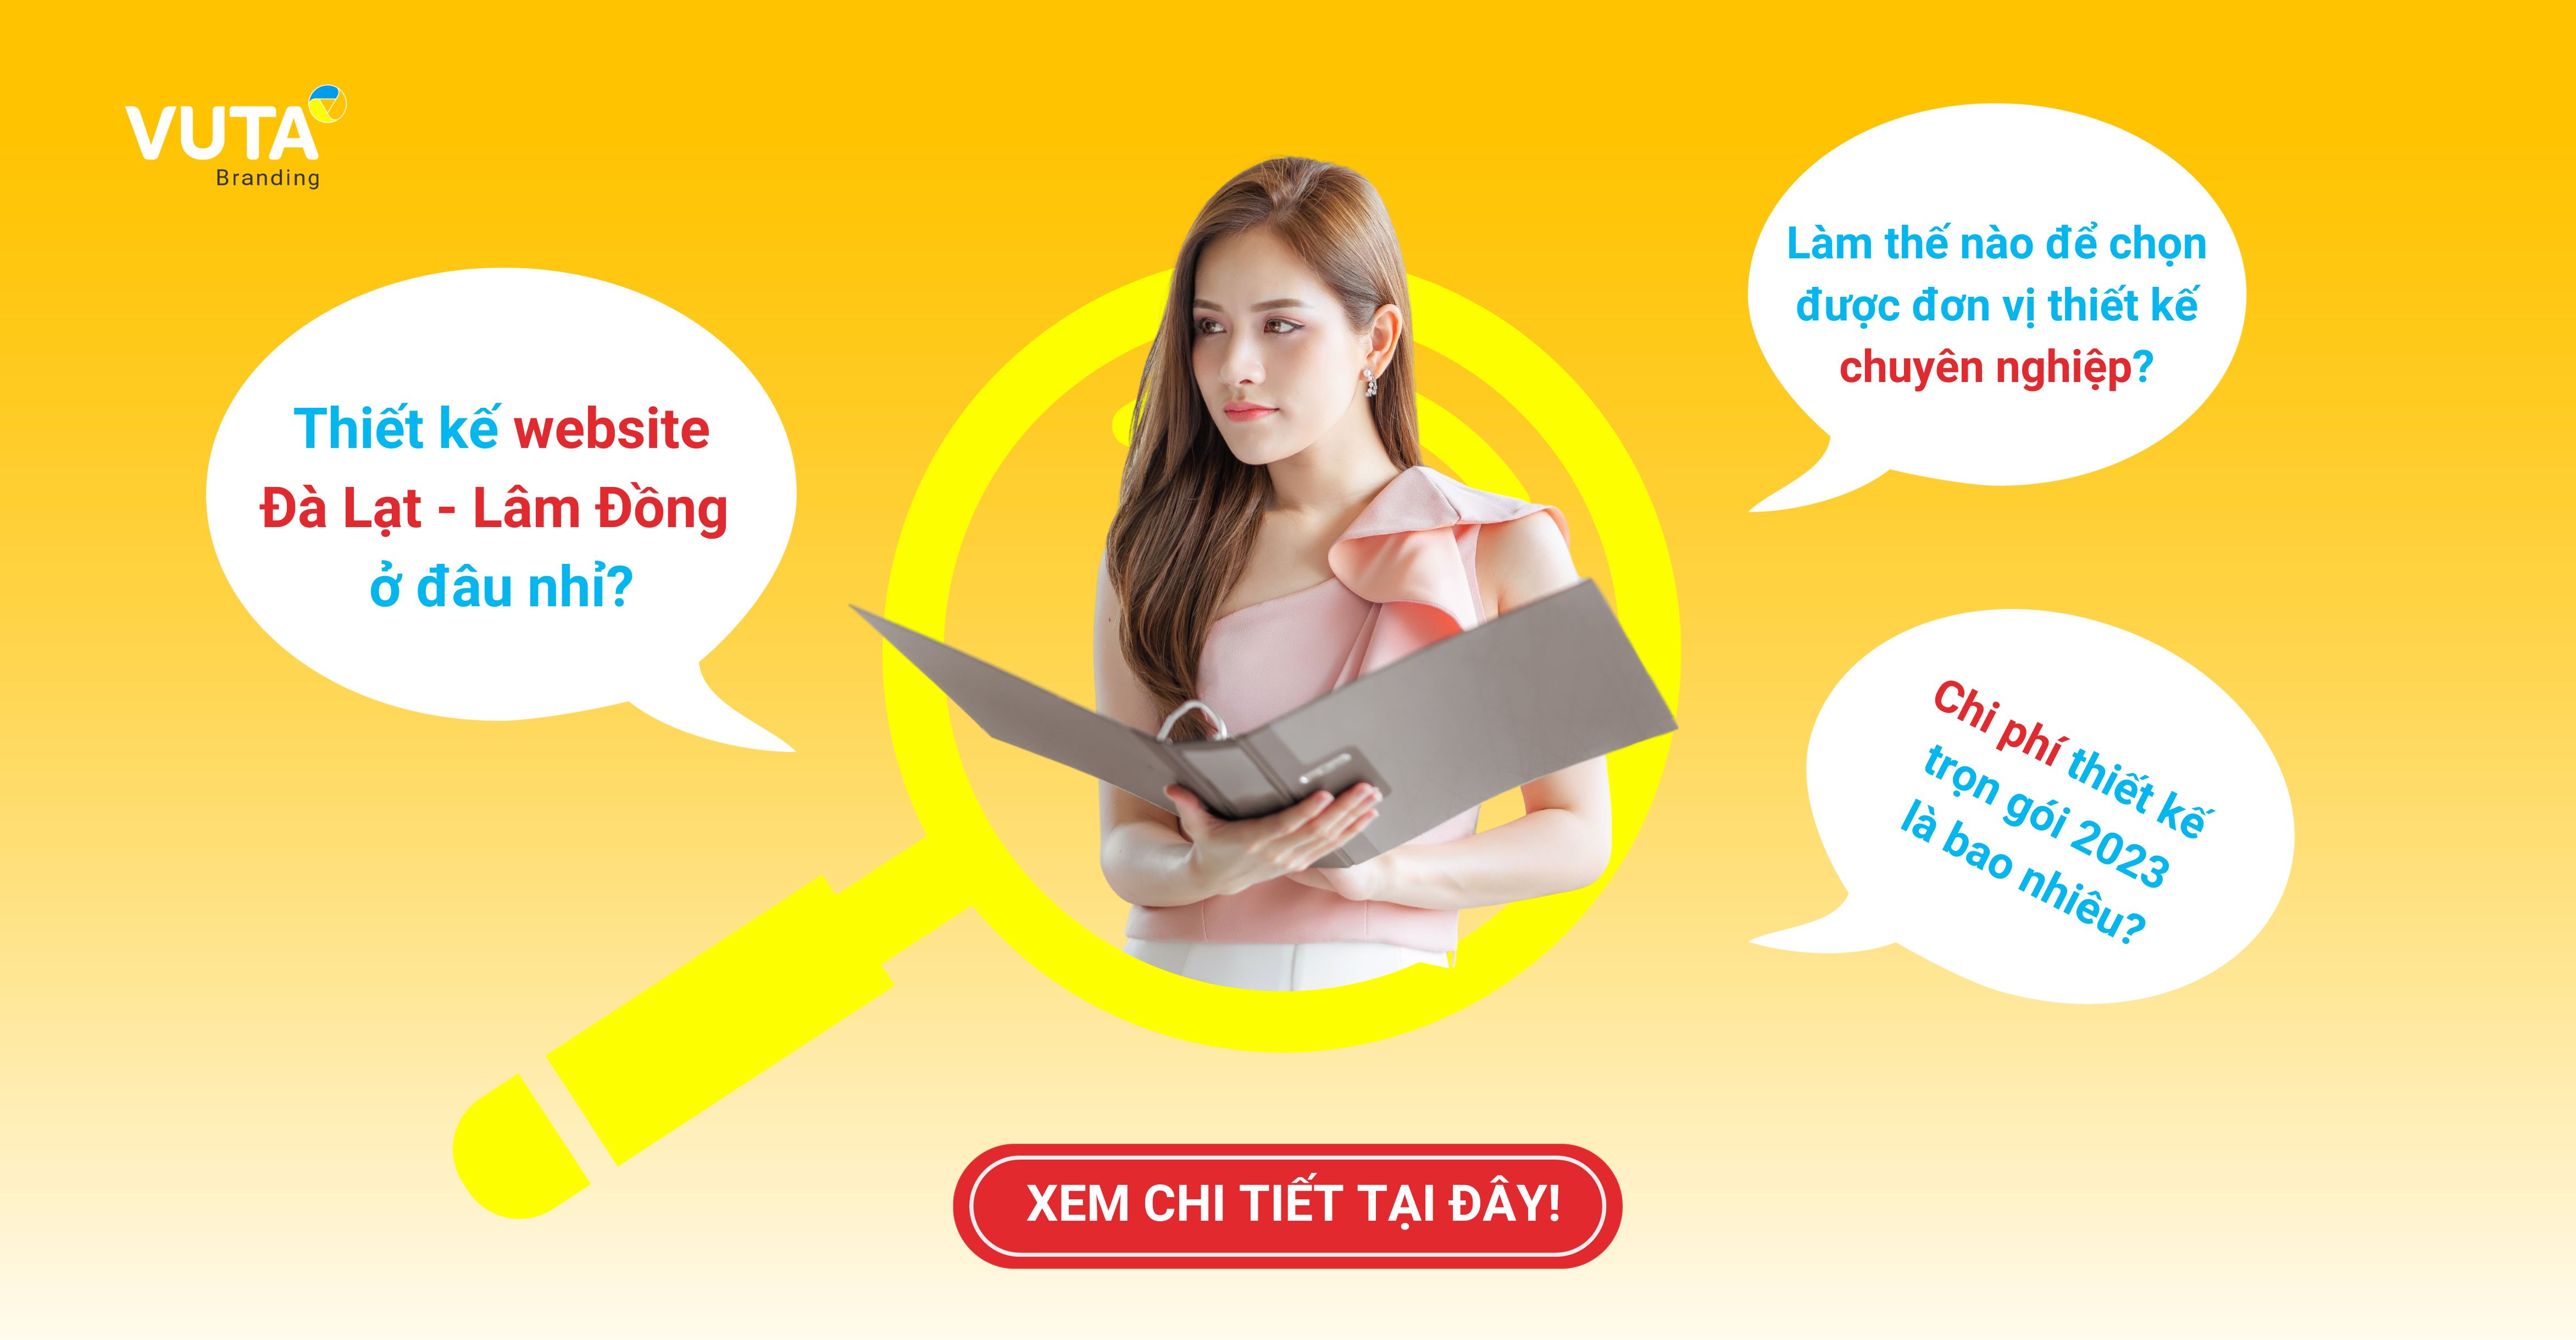 Dịch Vụ Thiết Kế Website Đà Lạt - Lâm Đồng Chuyên Nghiệp